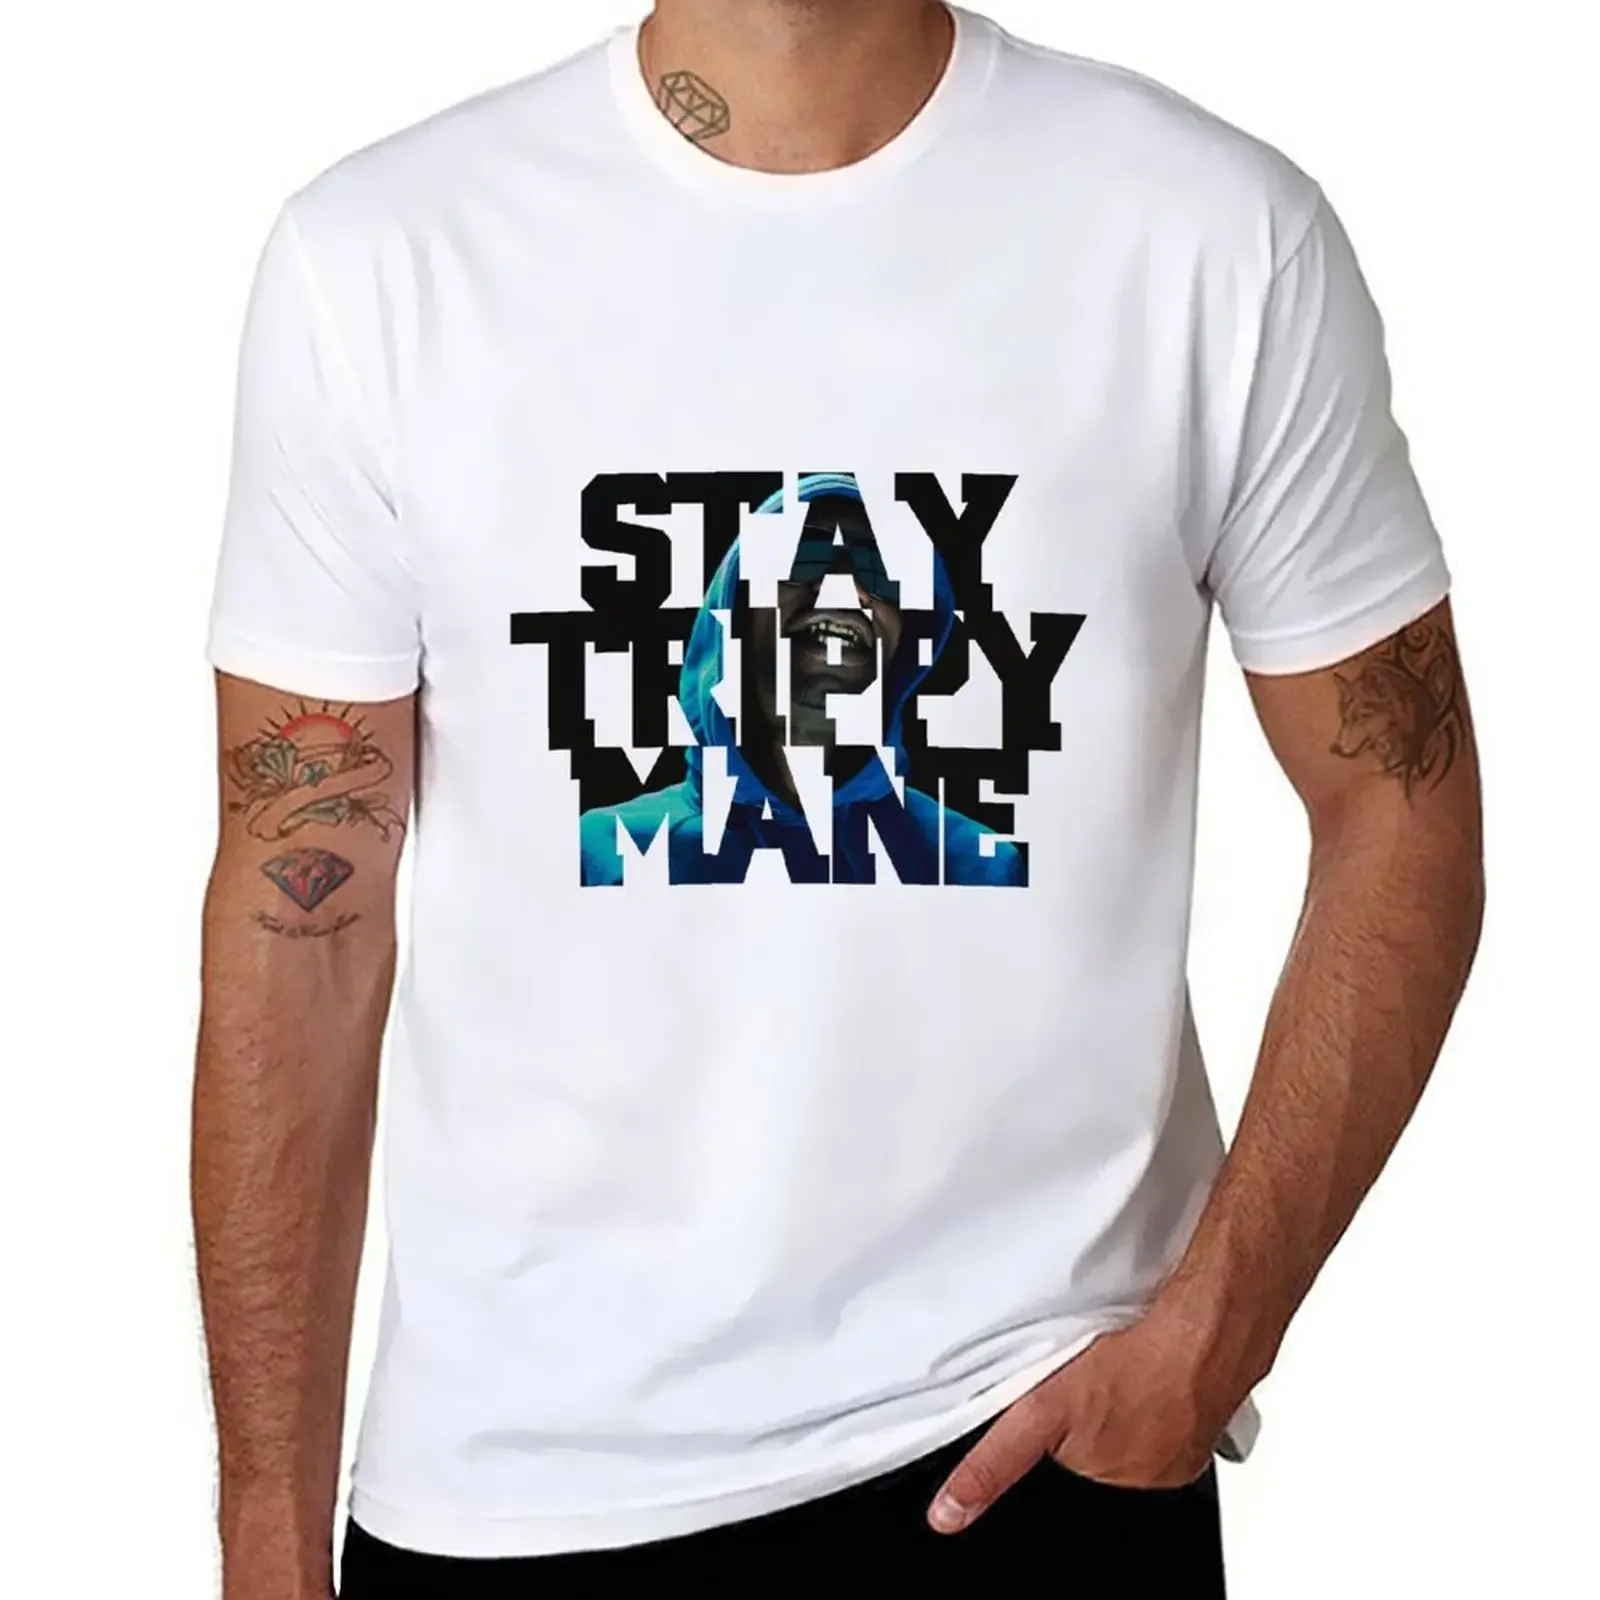 

Привлекательная футболка J - Stay с рисунком гривы, изготавливаемая на заказ графическая футболка, тяжелая футболка для мужчин